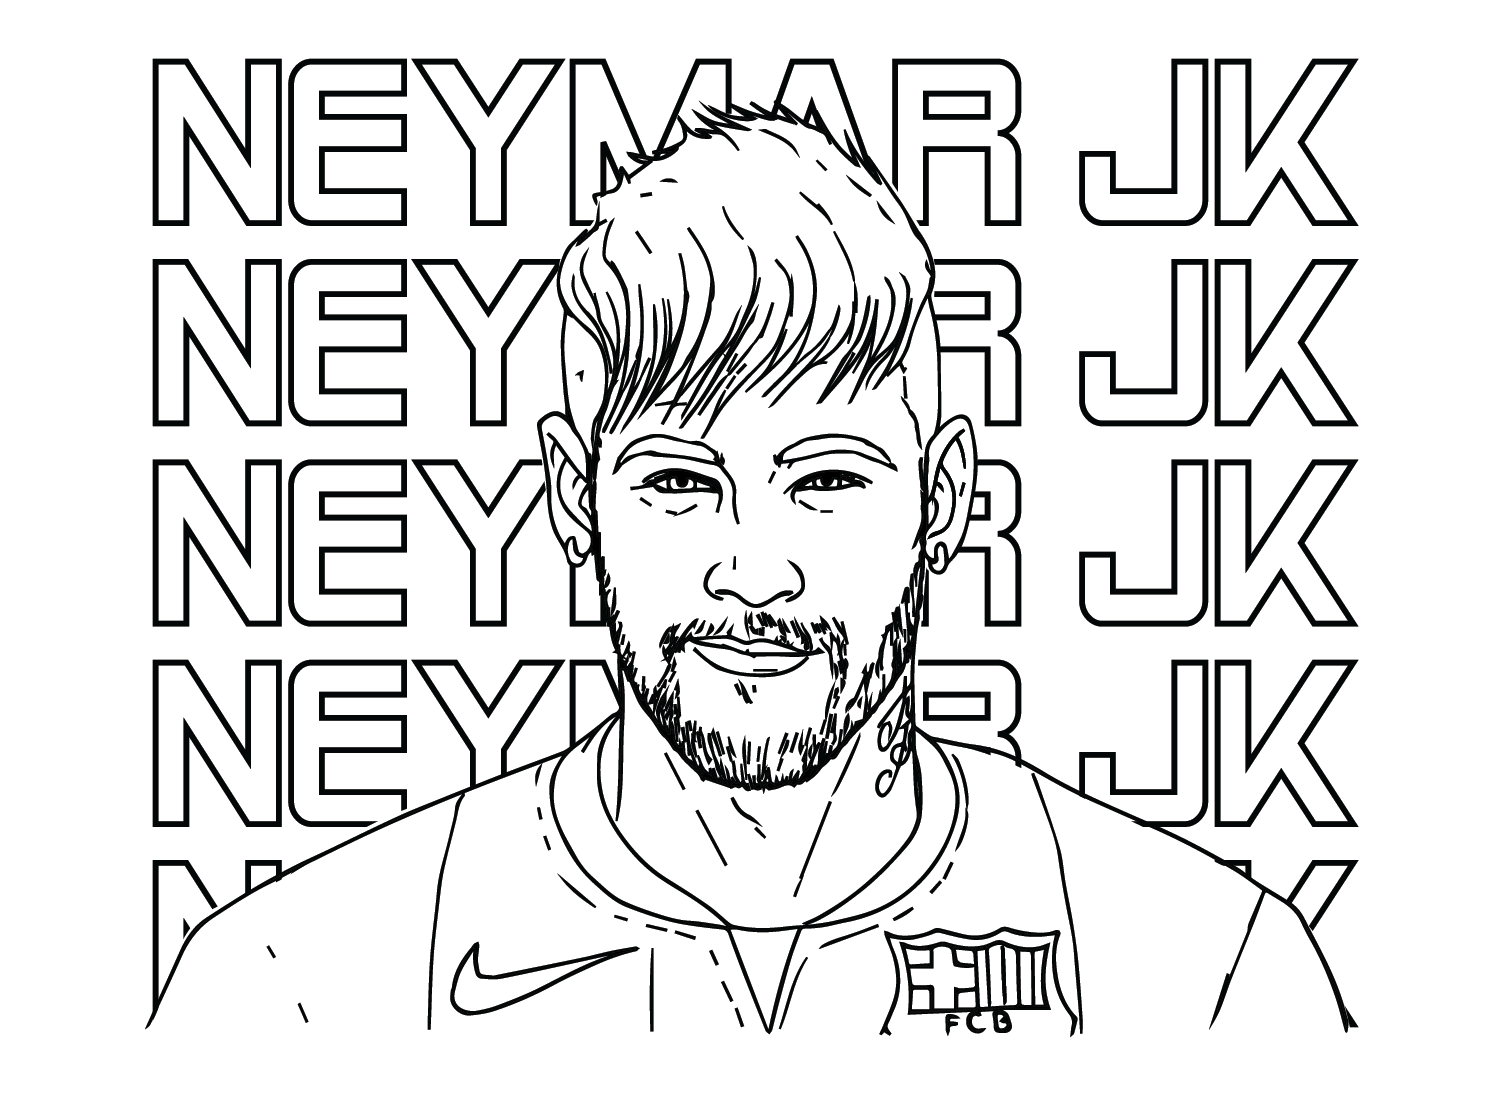 Neymar JK von Neymar